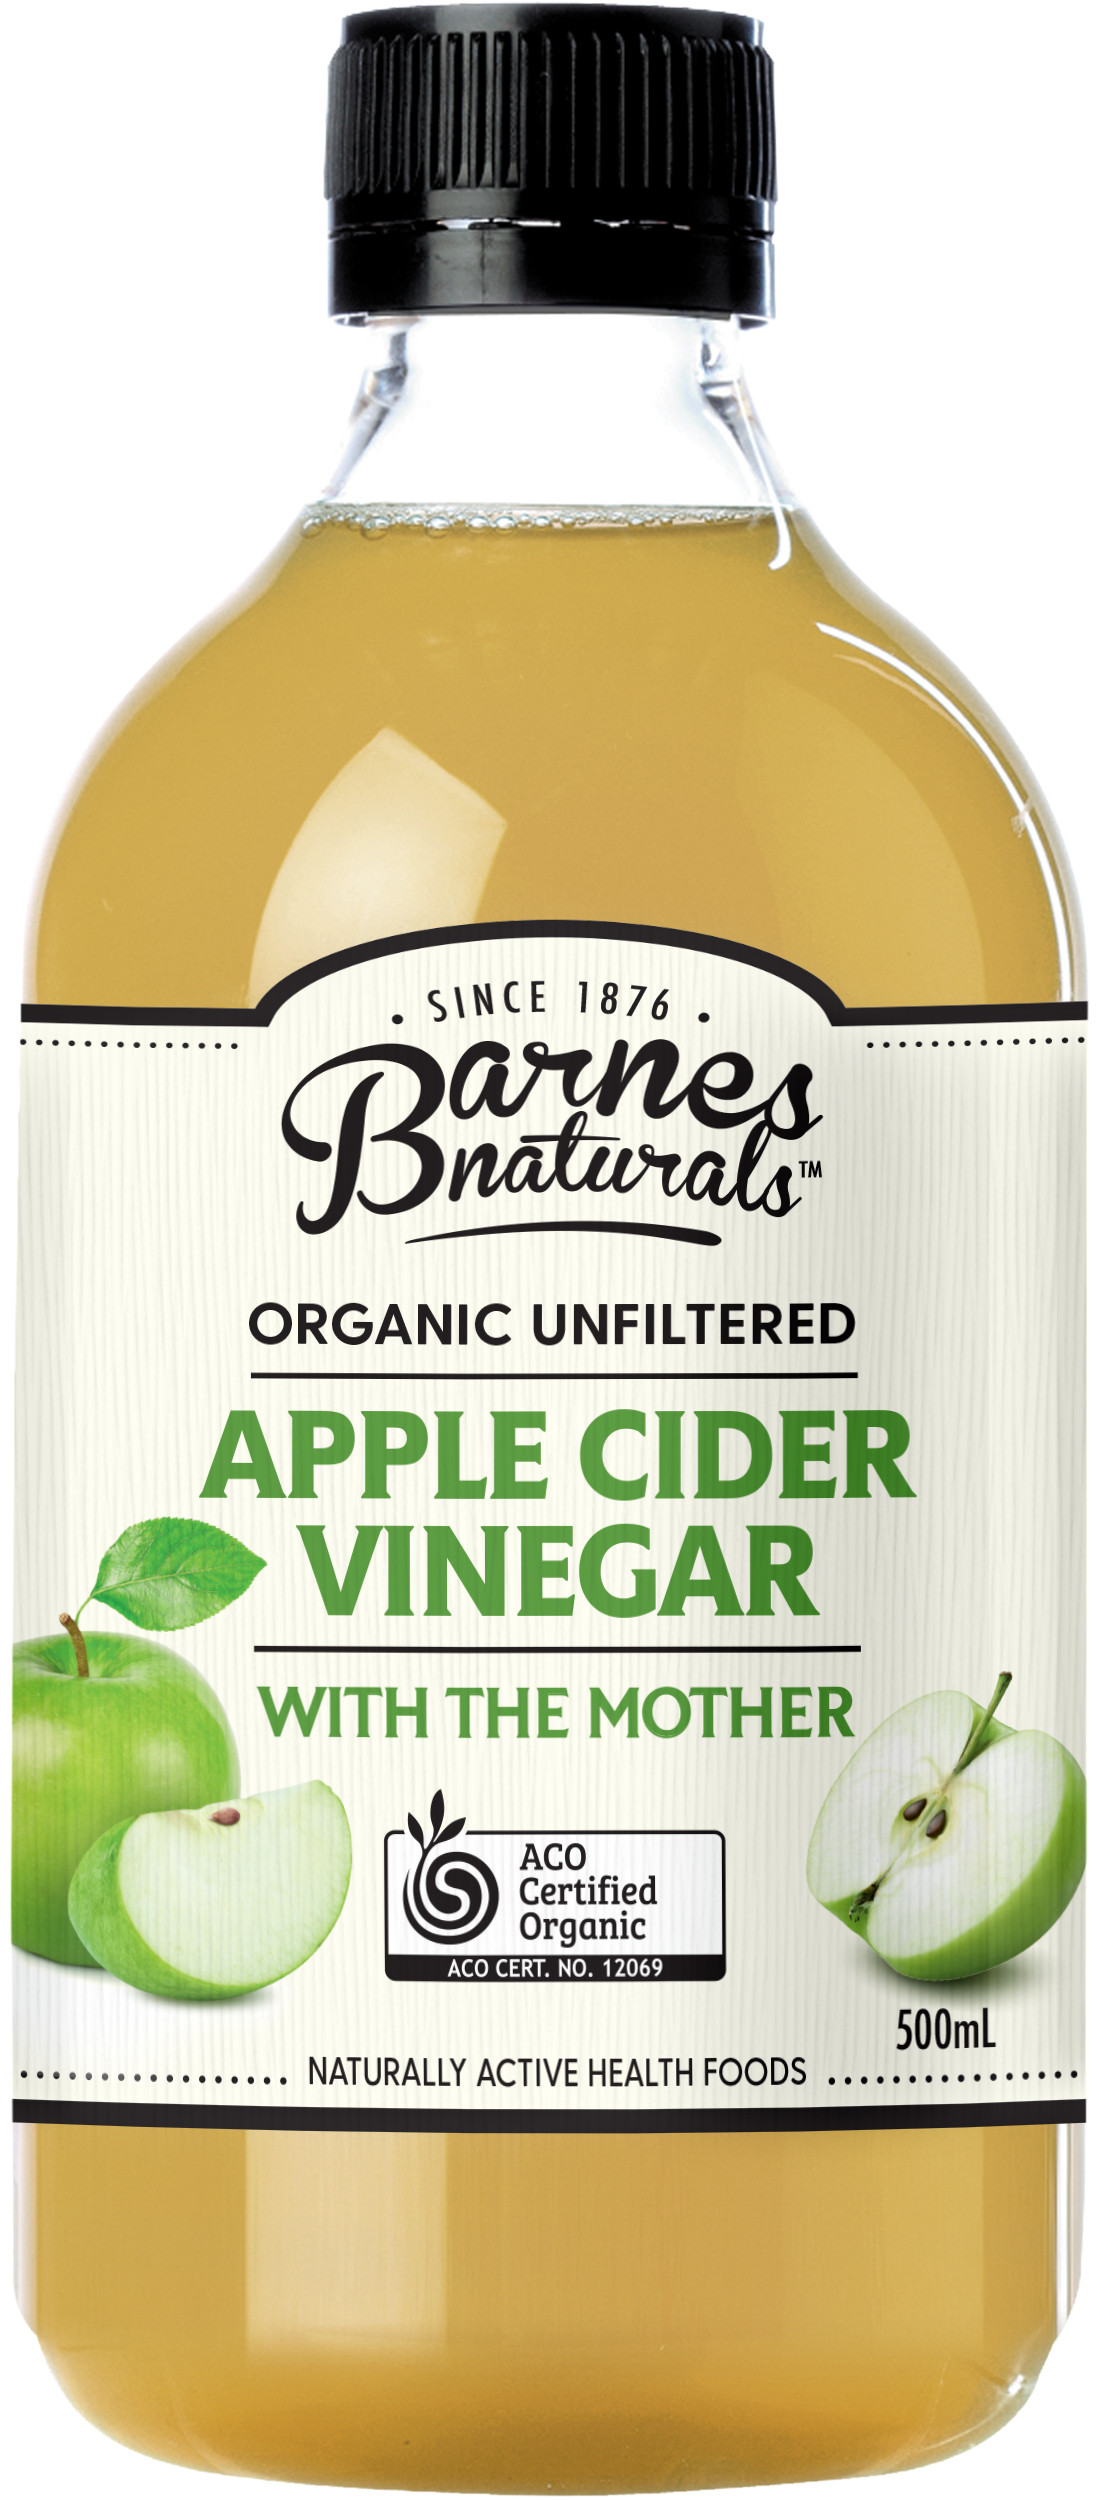 Giấm táo hữu cơ Barnes Naturals (có giấm cái) Organic Apple Cider Vinegar (with mother)